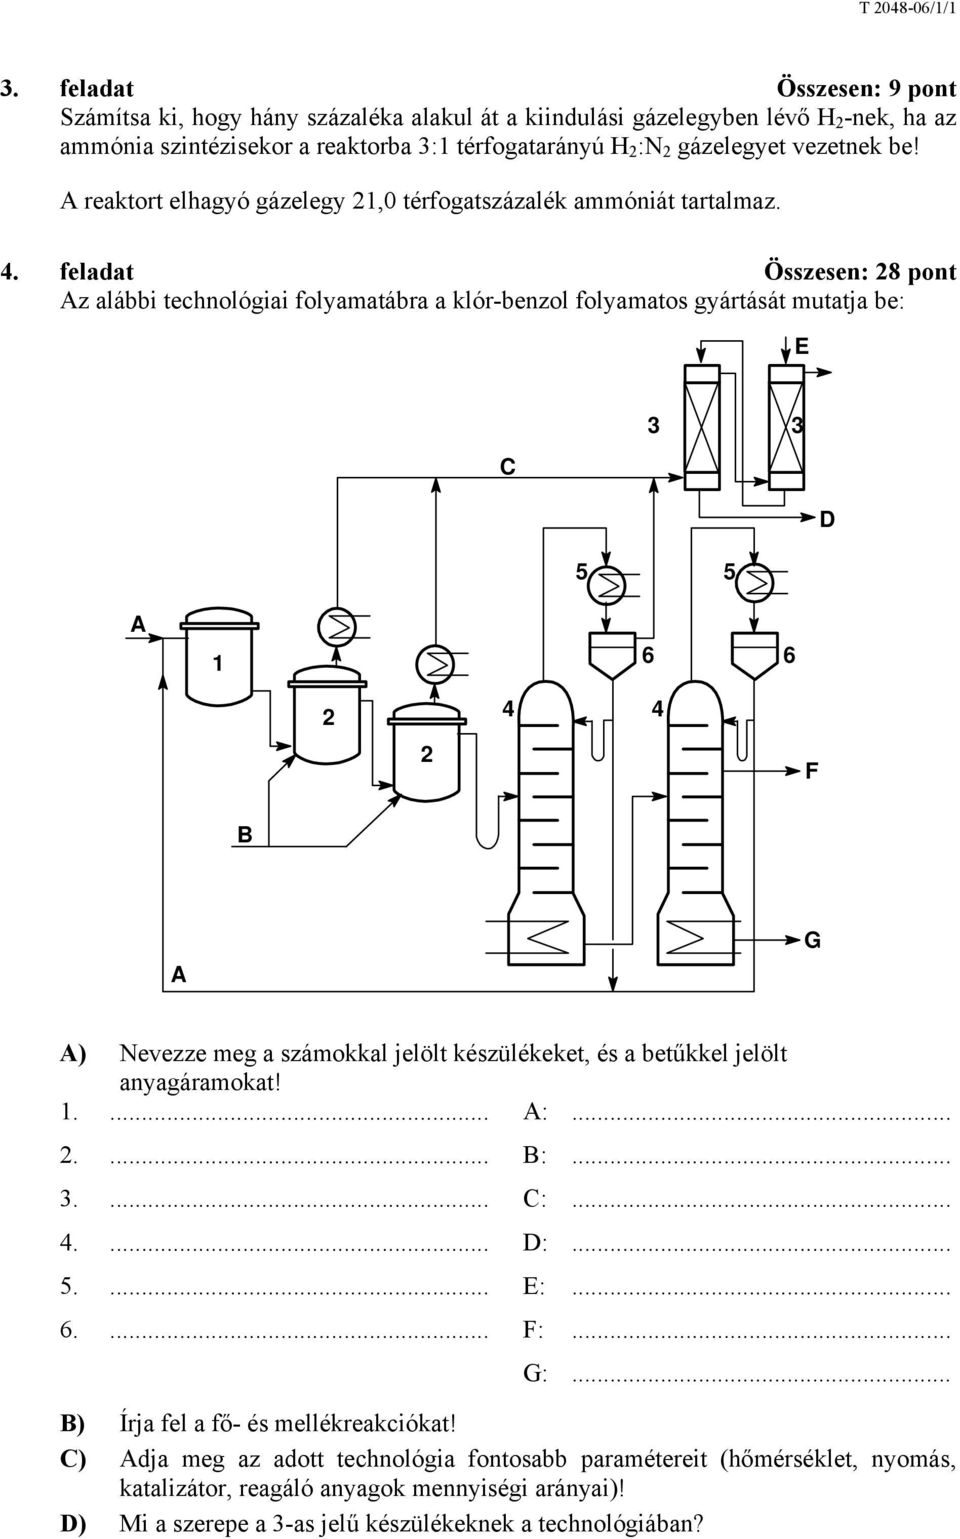 feladat Összesen: 28 pont Az alábbi technológiai folyamatábra a klór-benzol folyamatos gyártását mutatja be: E C 3 3 D 5 5 A 1 6 6 2 4 4 2 F B A G A) Nevezze meg a számokkal jelölt készülékeket, és a